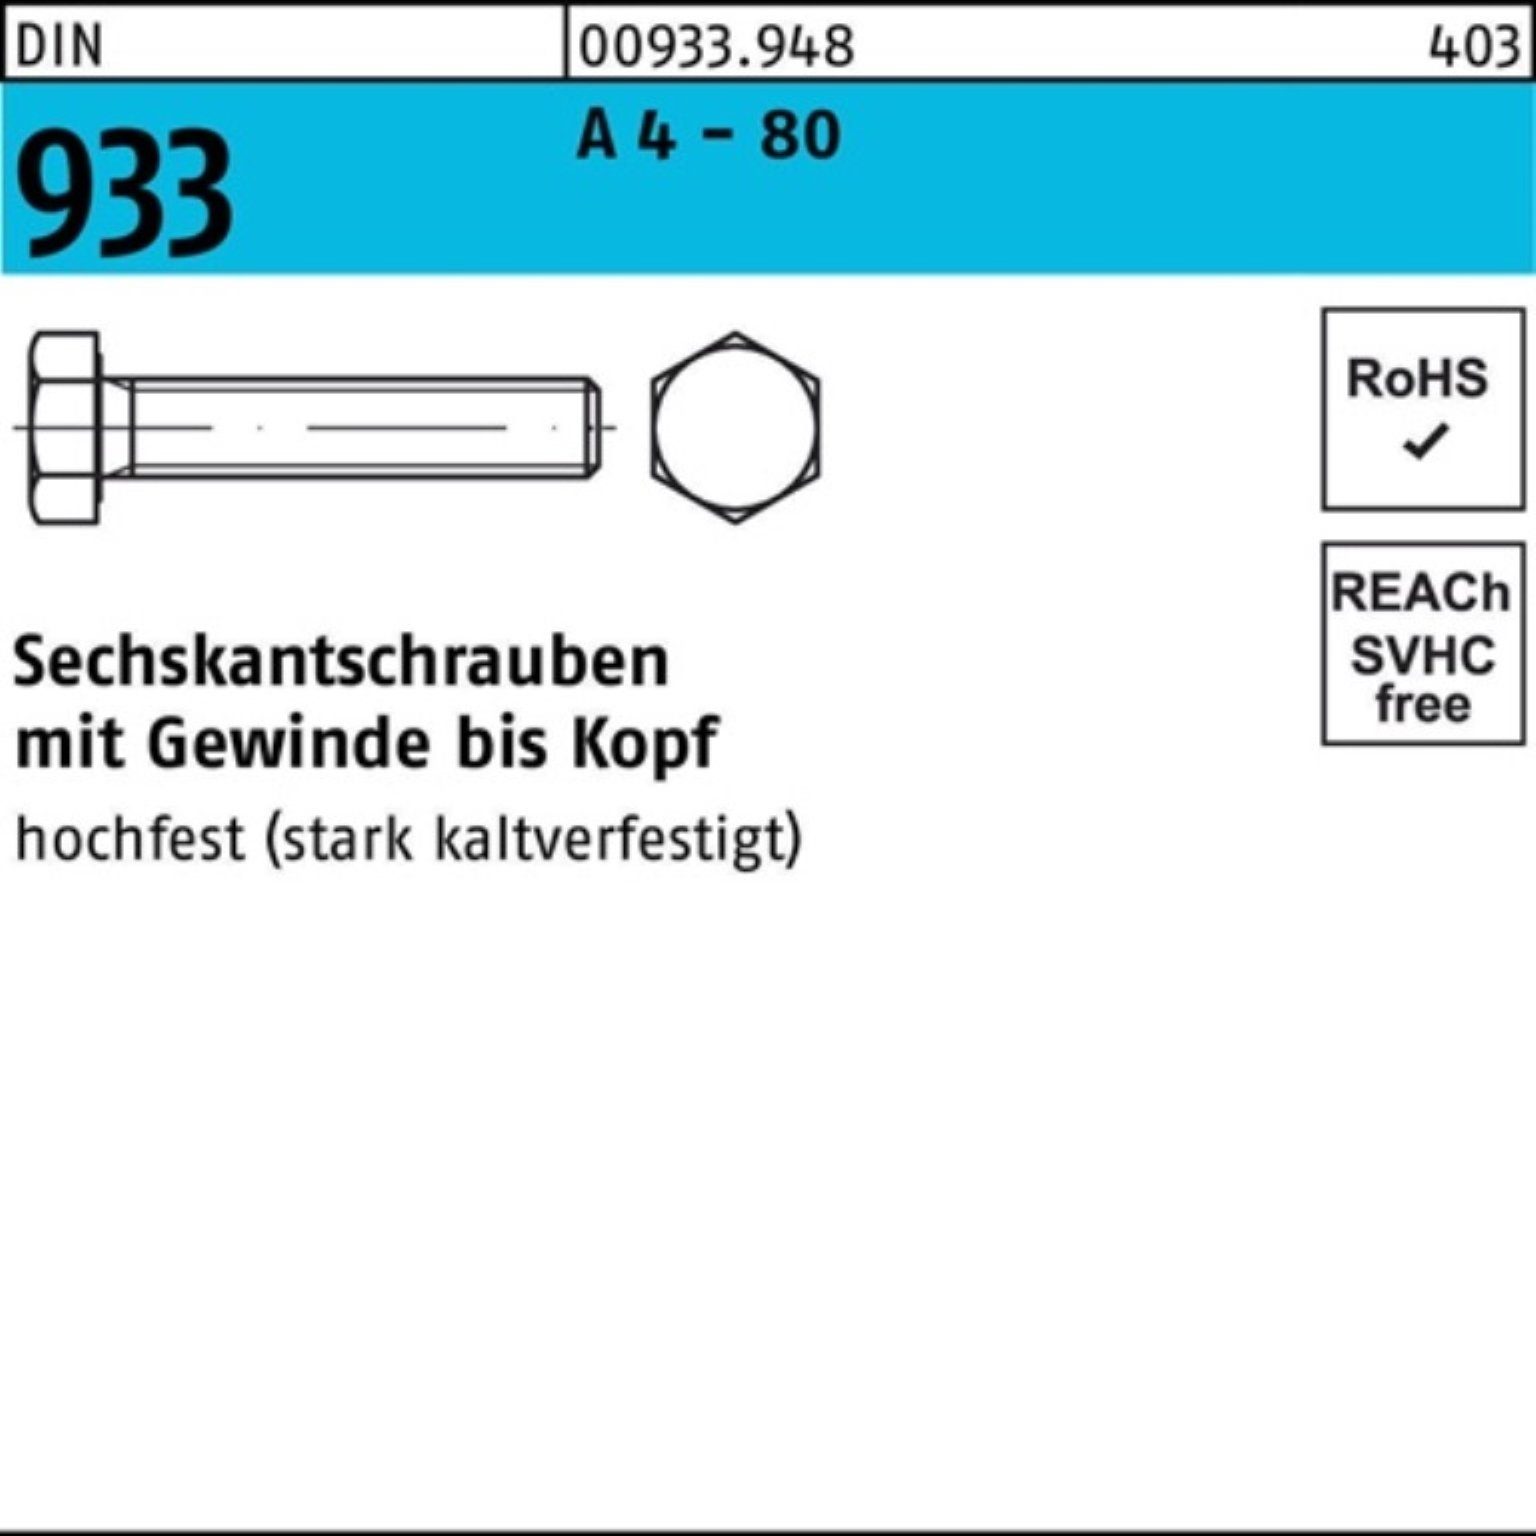 Reyher Sechskantschraube 100er Pack Sechskantschraube DIN 933 VG M8x 40 A 4 - 80 100 Stück DIN